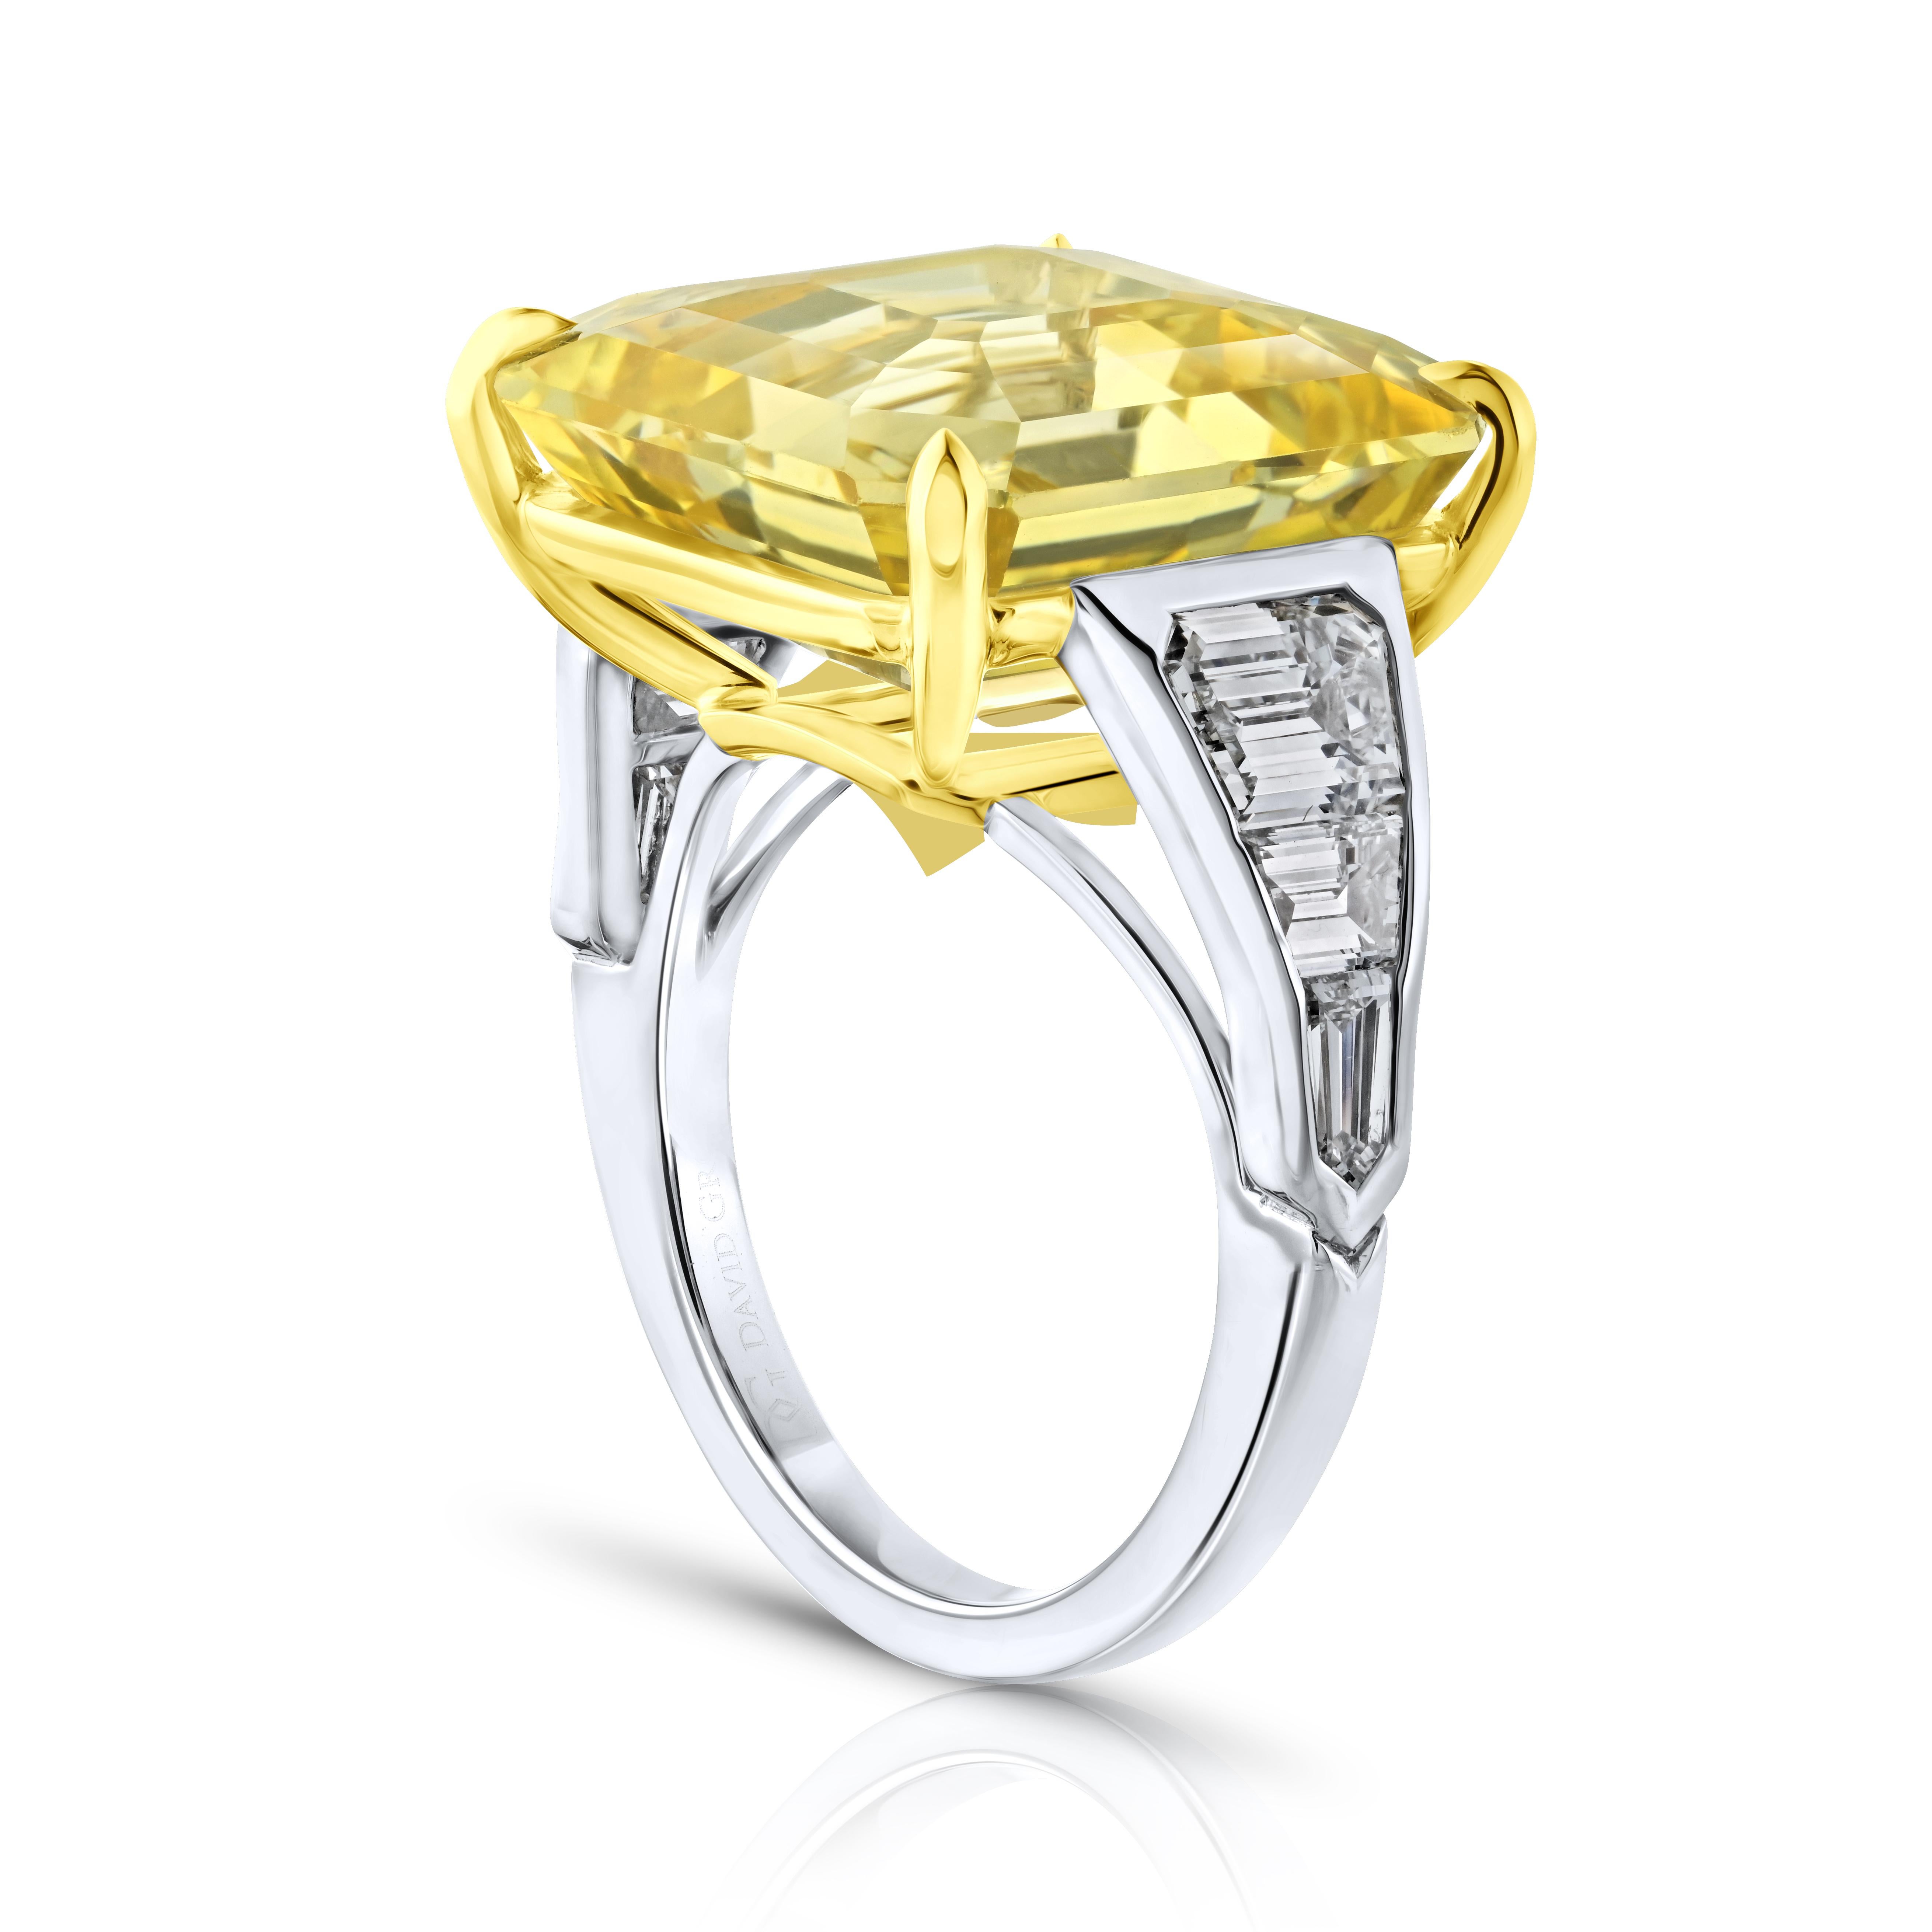 20.41 carat Asscher Yellow Sapphire with Diamonds 2.08 carats set in a handmade Platinum & 18k ring